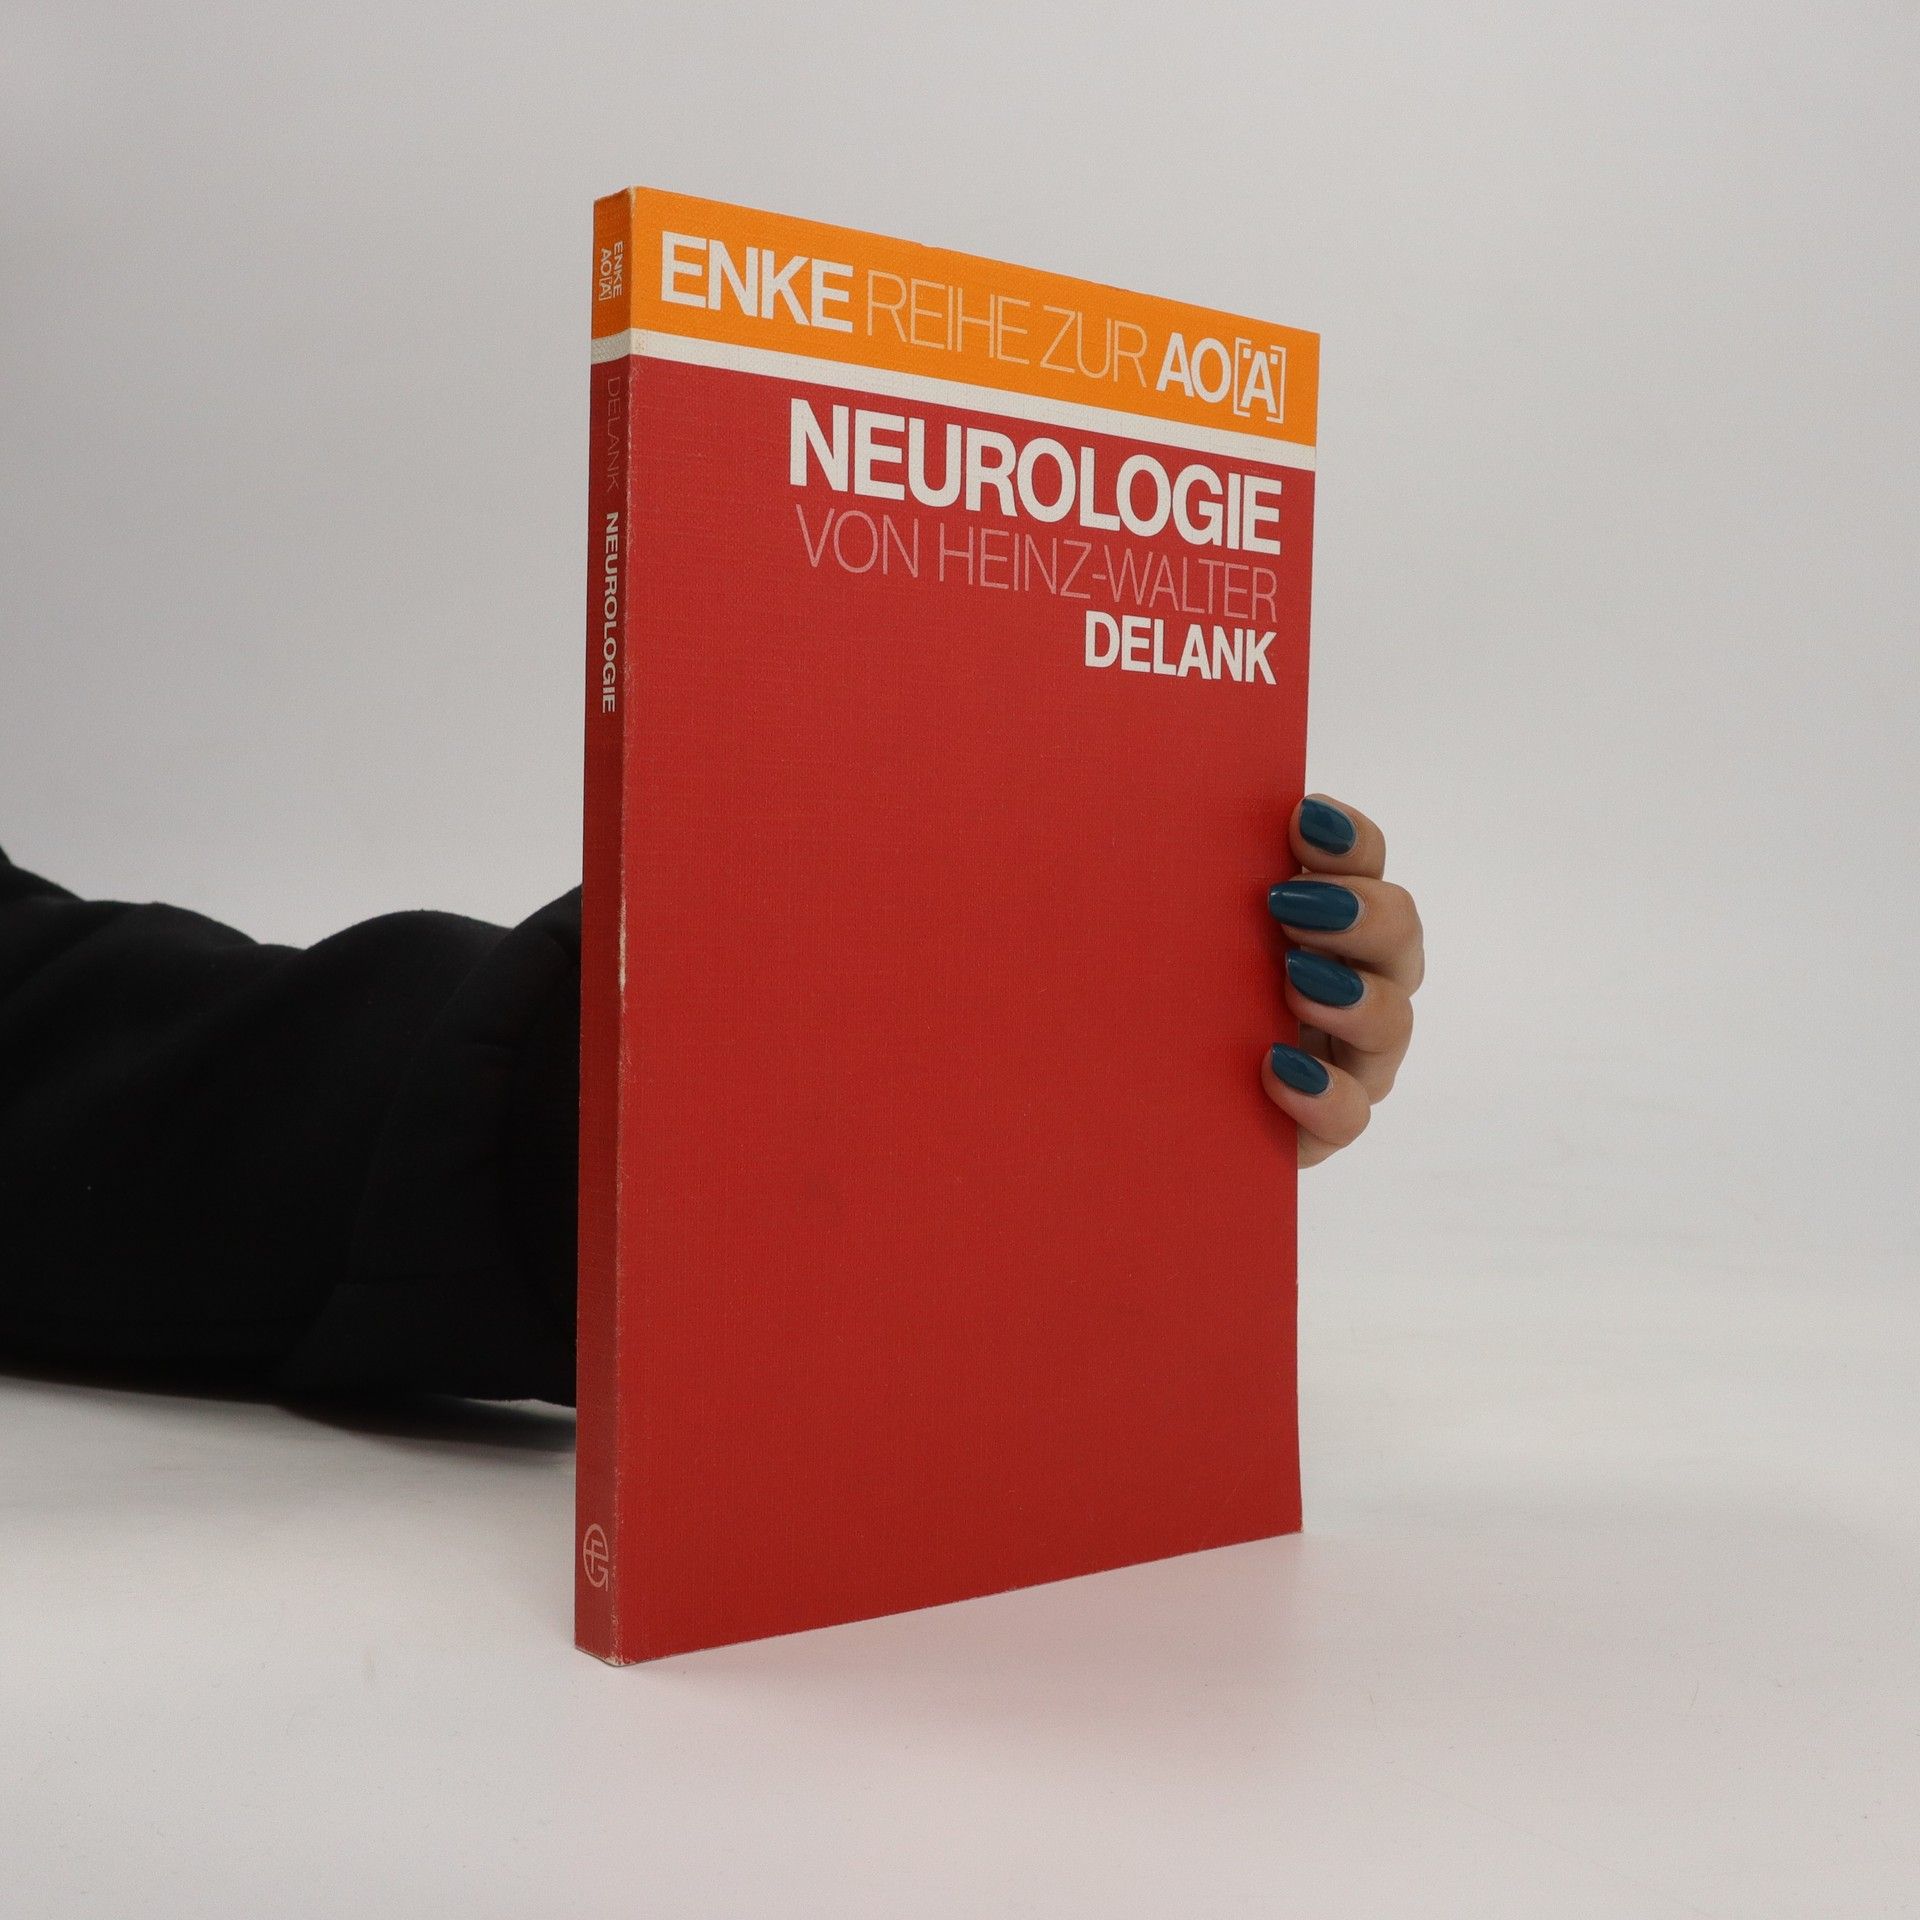 Neurologie - Heinz Walter Delank